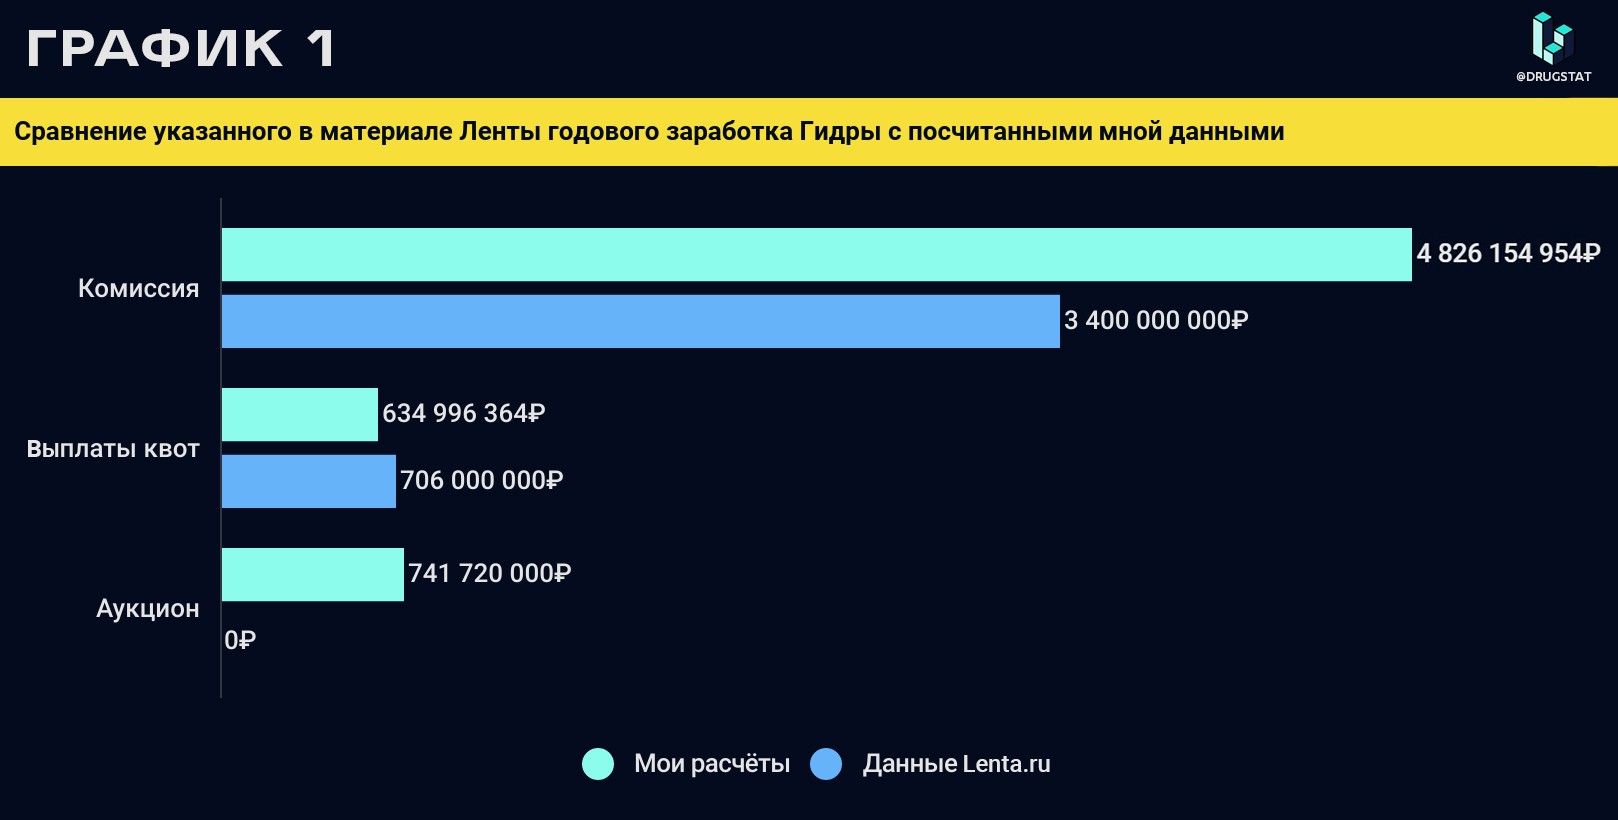 Даркнет технологий попасть на гидру скачать браузер тор с официального сайта бесплатно на русском языке 64 бит hidra